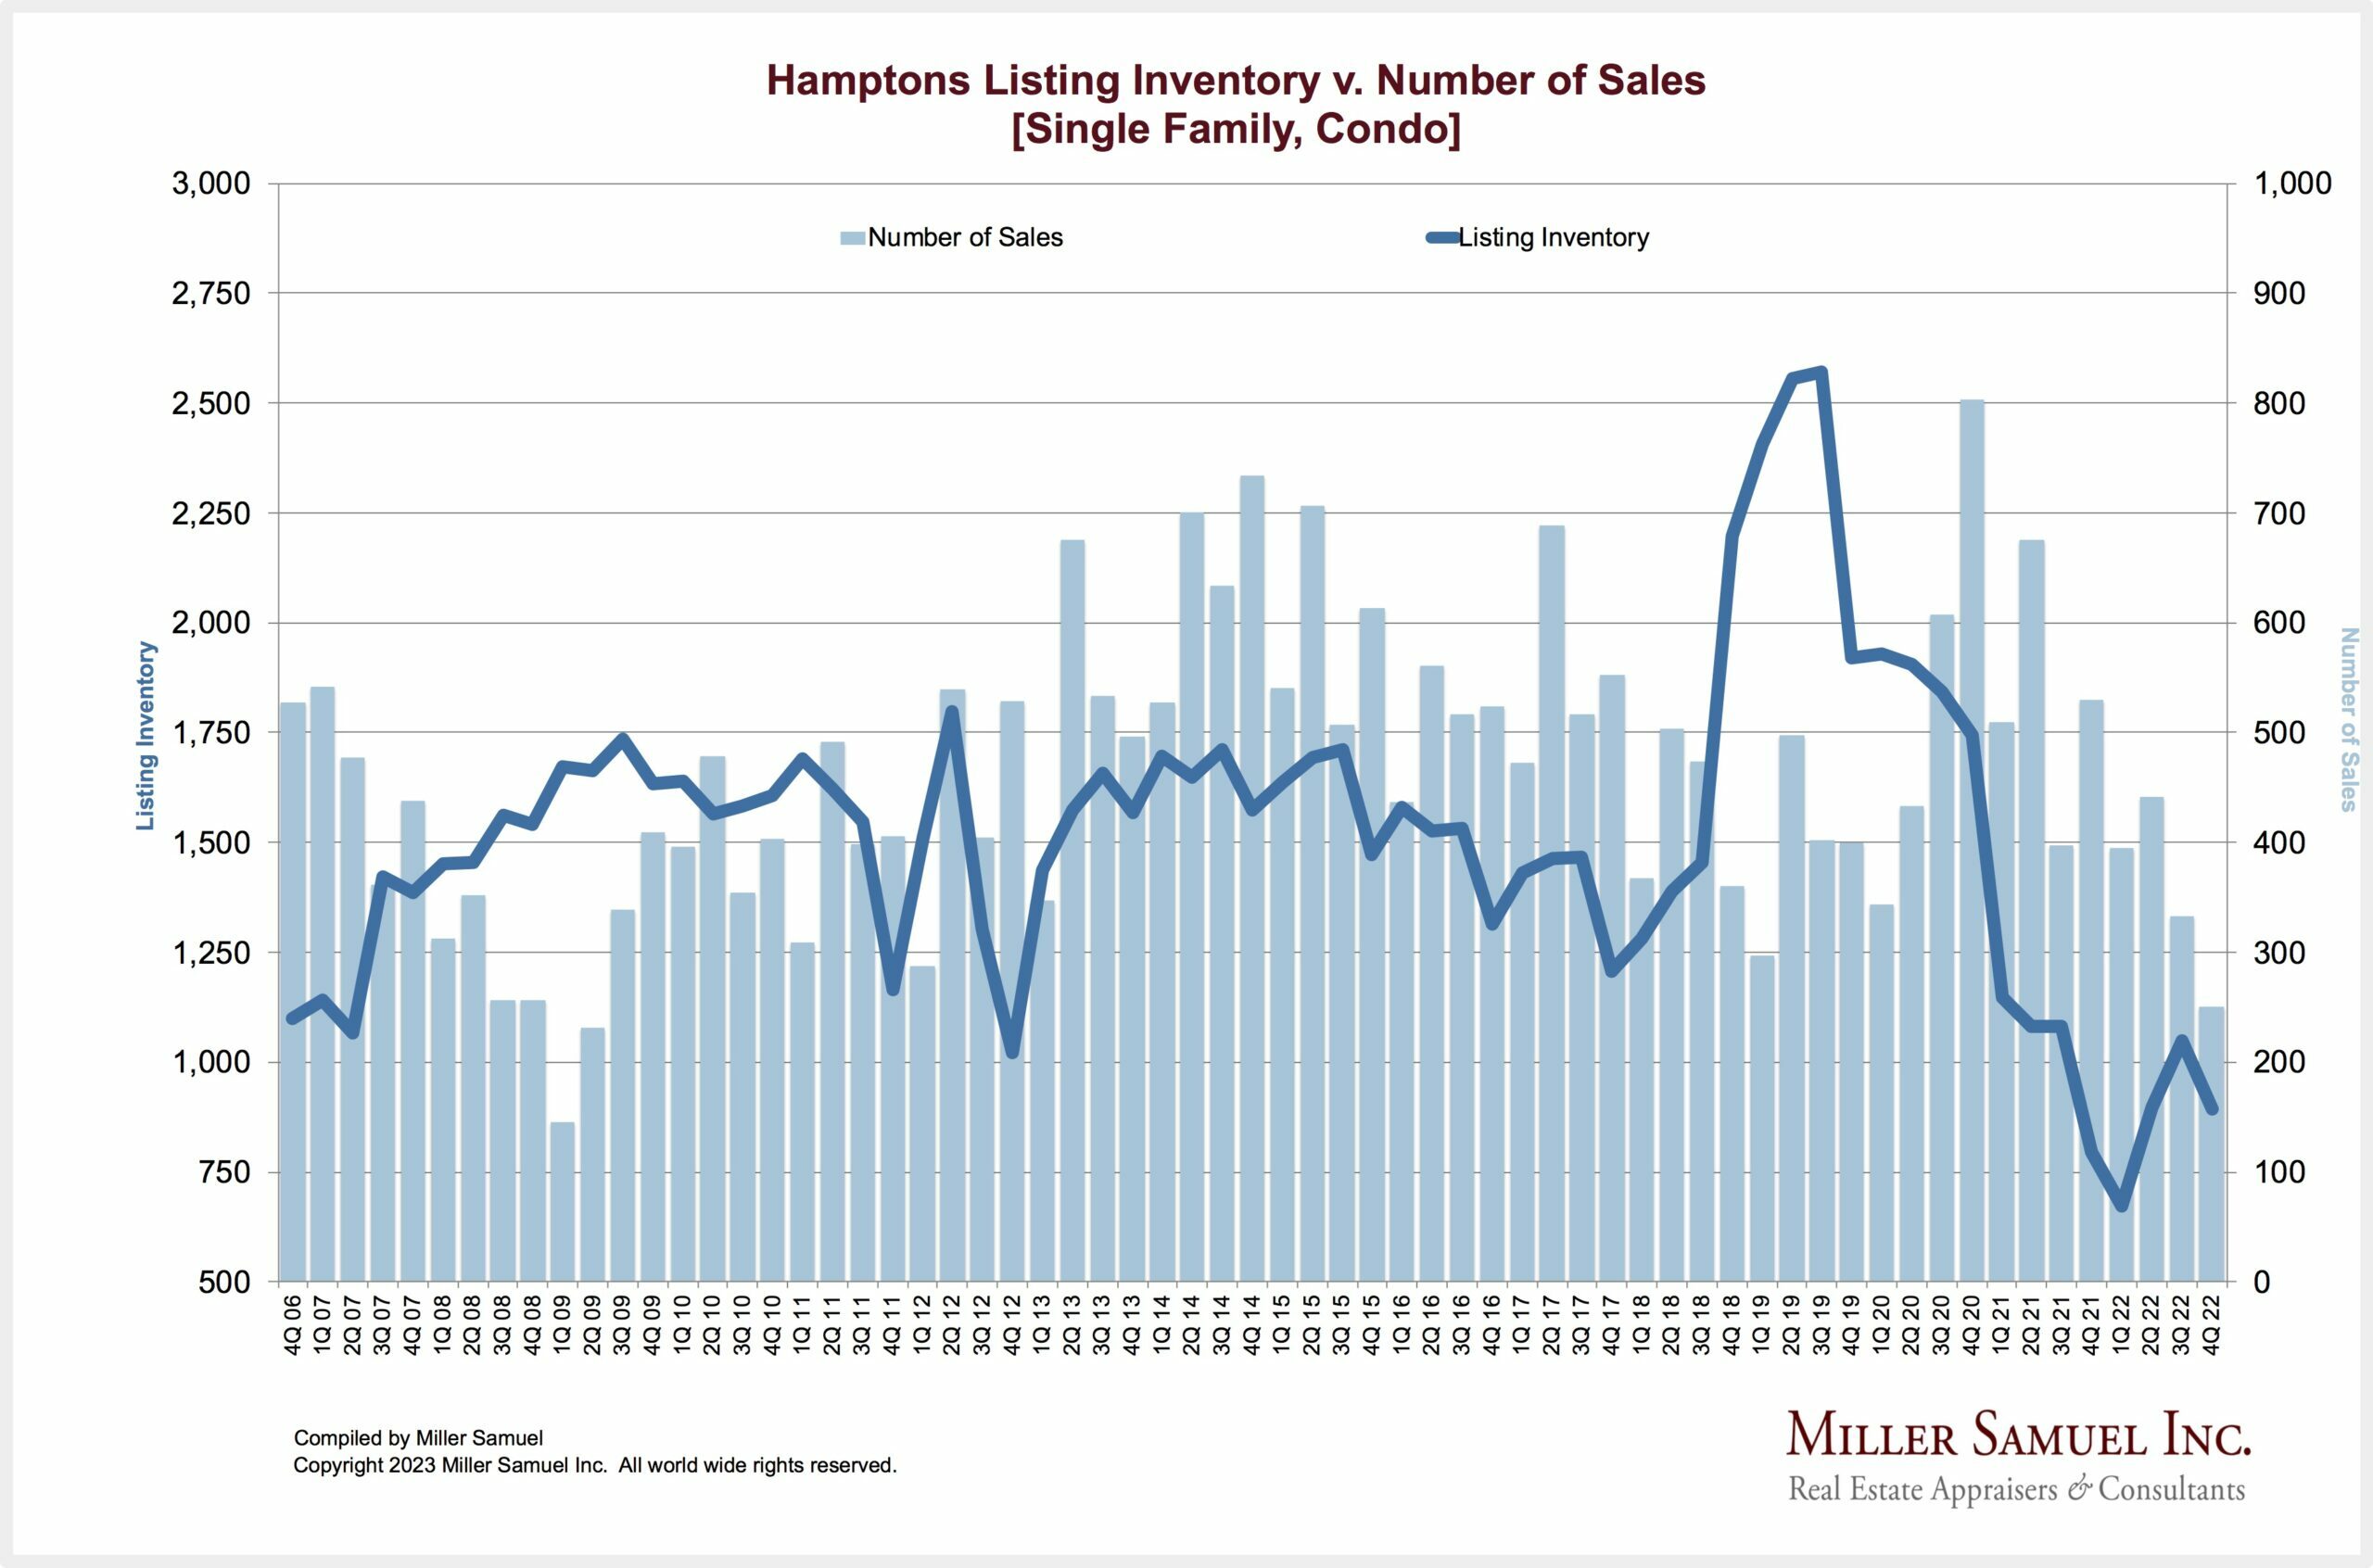 Hamptons Listing Inventory v. Number of Sales. COURTESY MILLER SAMUEL INC.